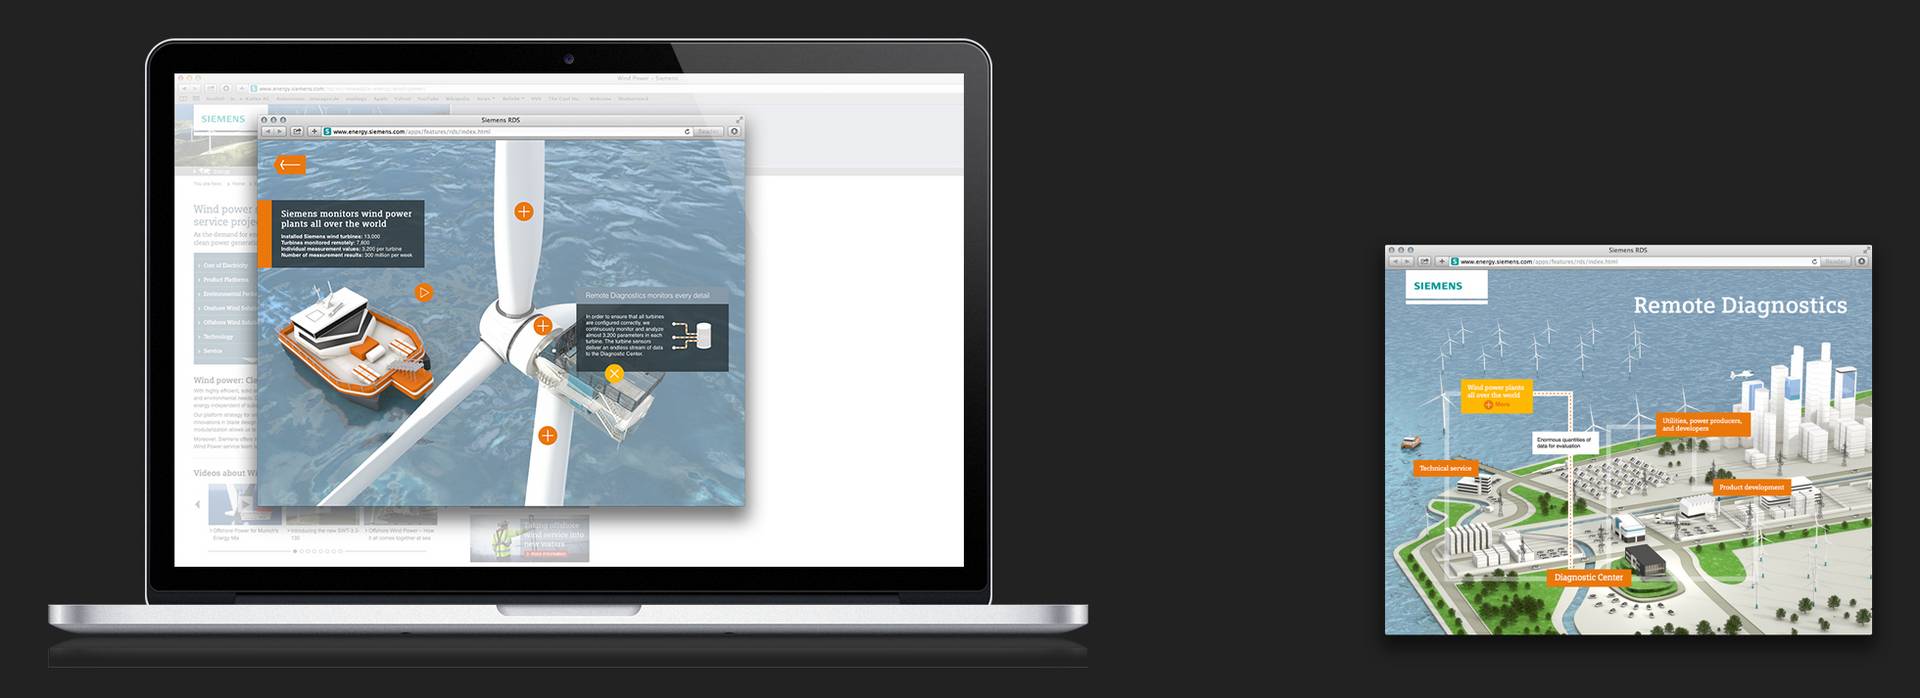 Screenshot aus der Remote-Diagnostik-Services-Animation auf einem MacBook